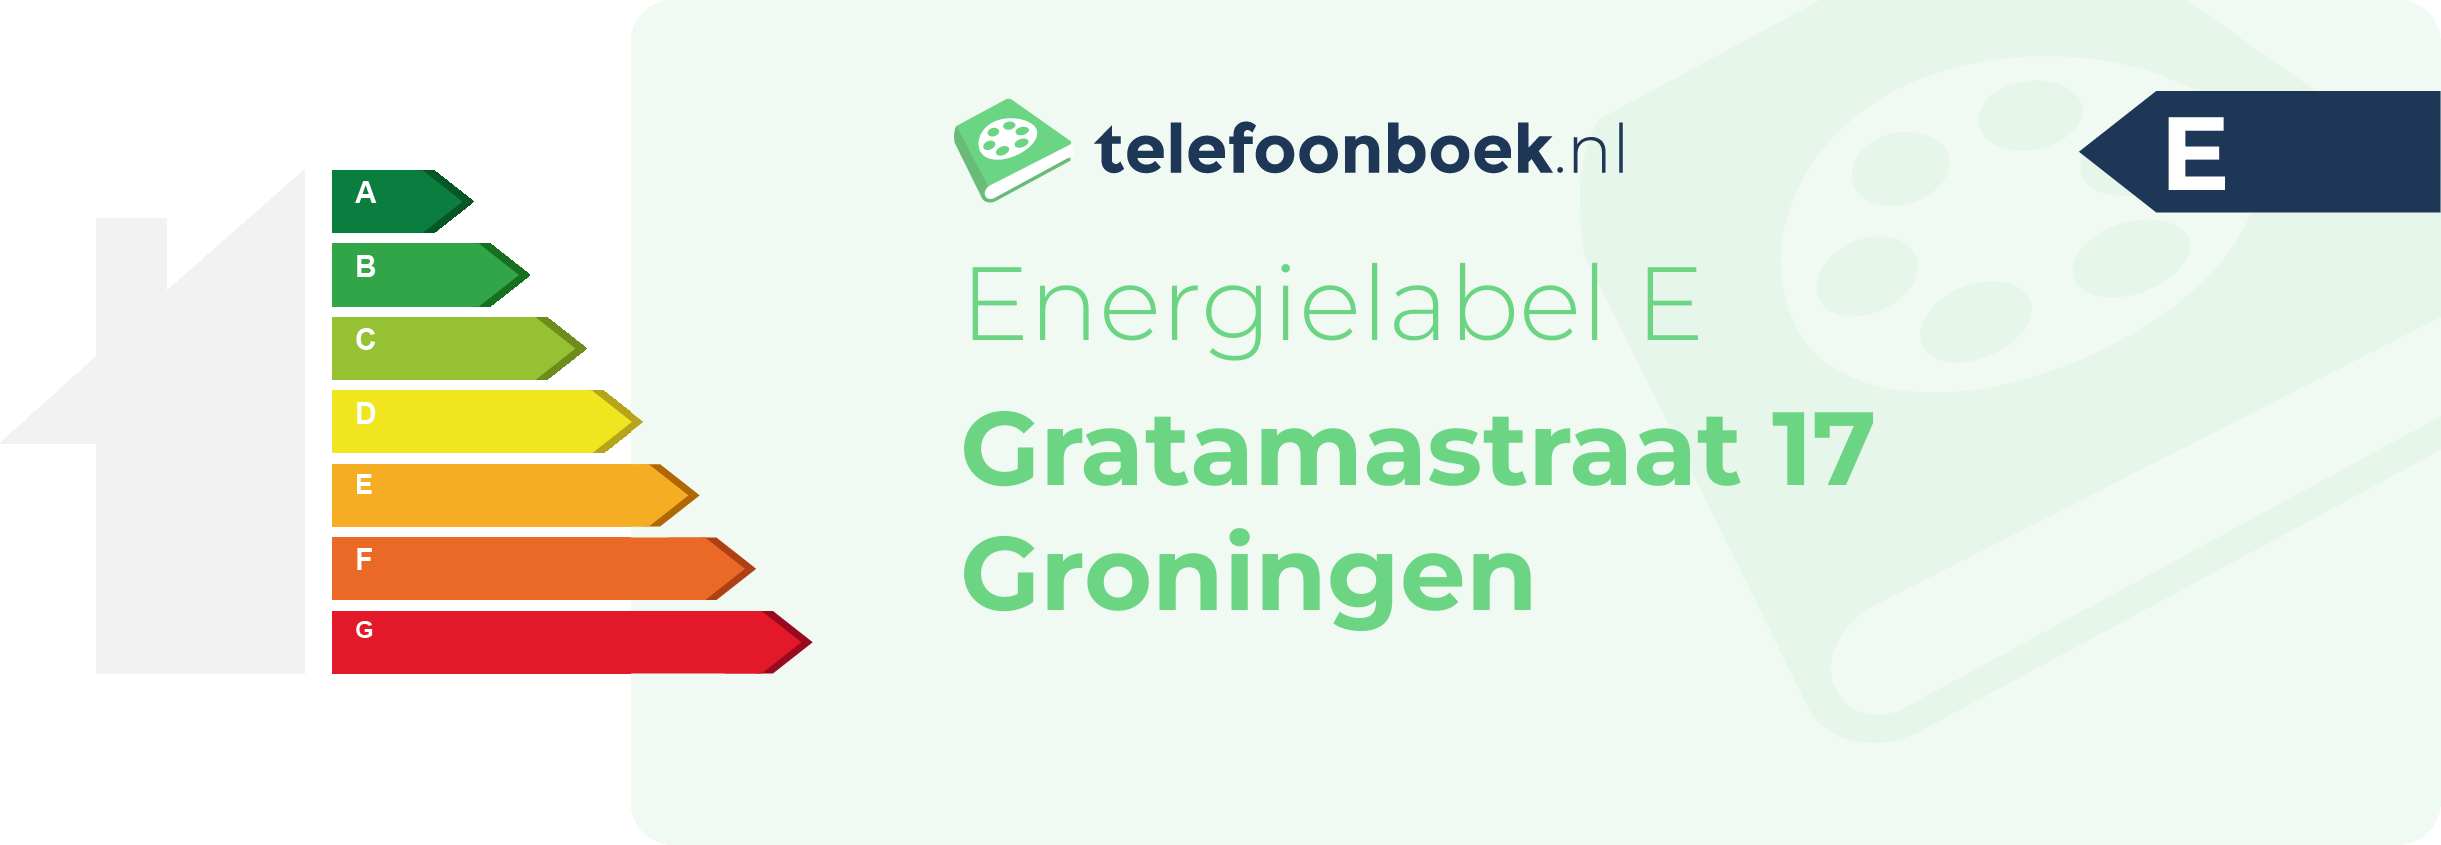 Energielabel Gratamastraat 17 Groningen